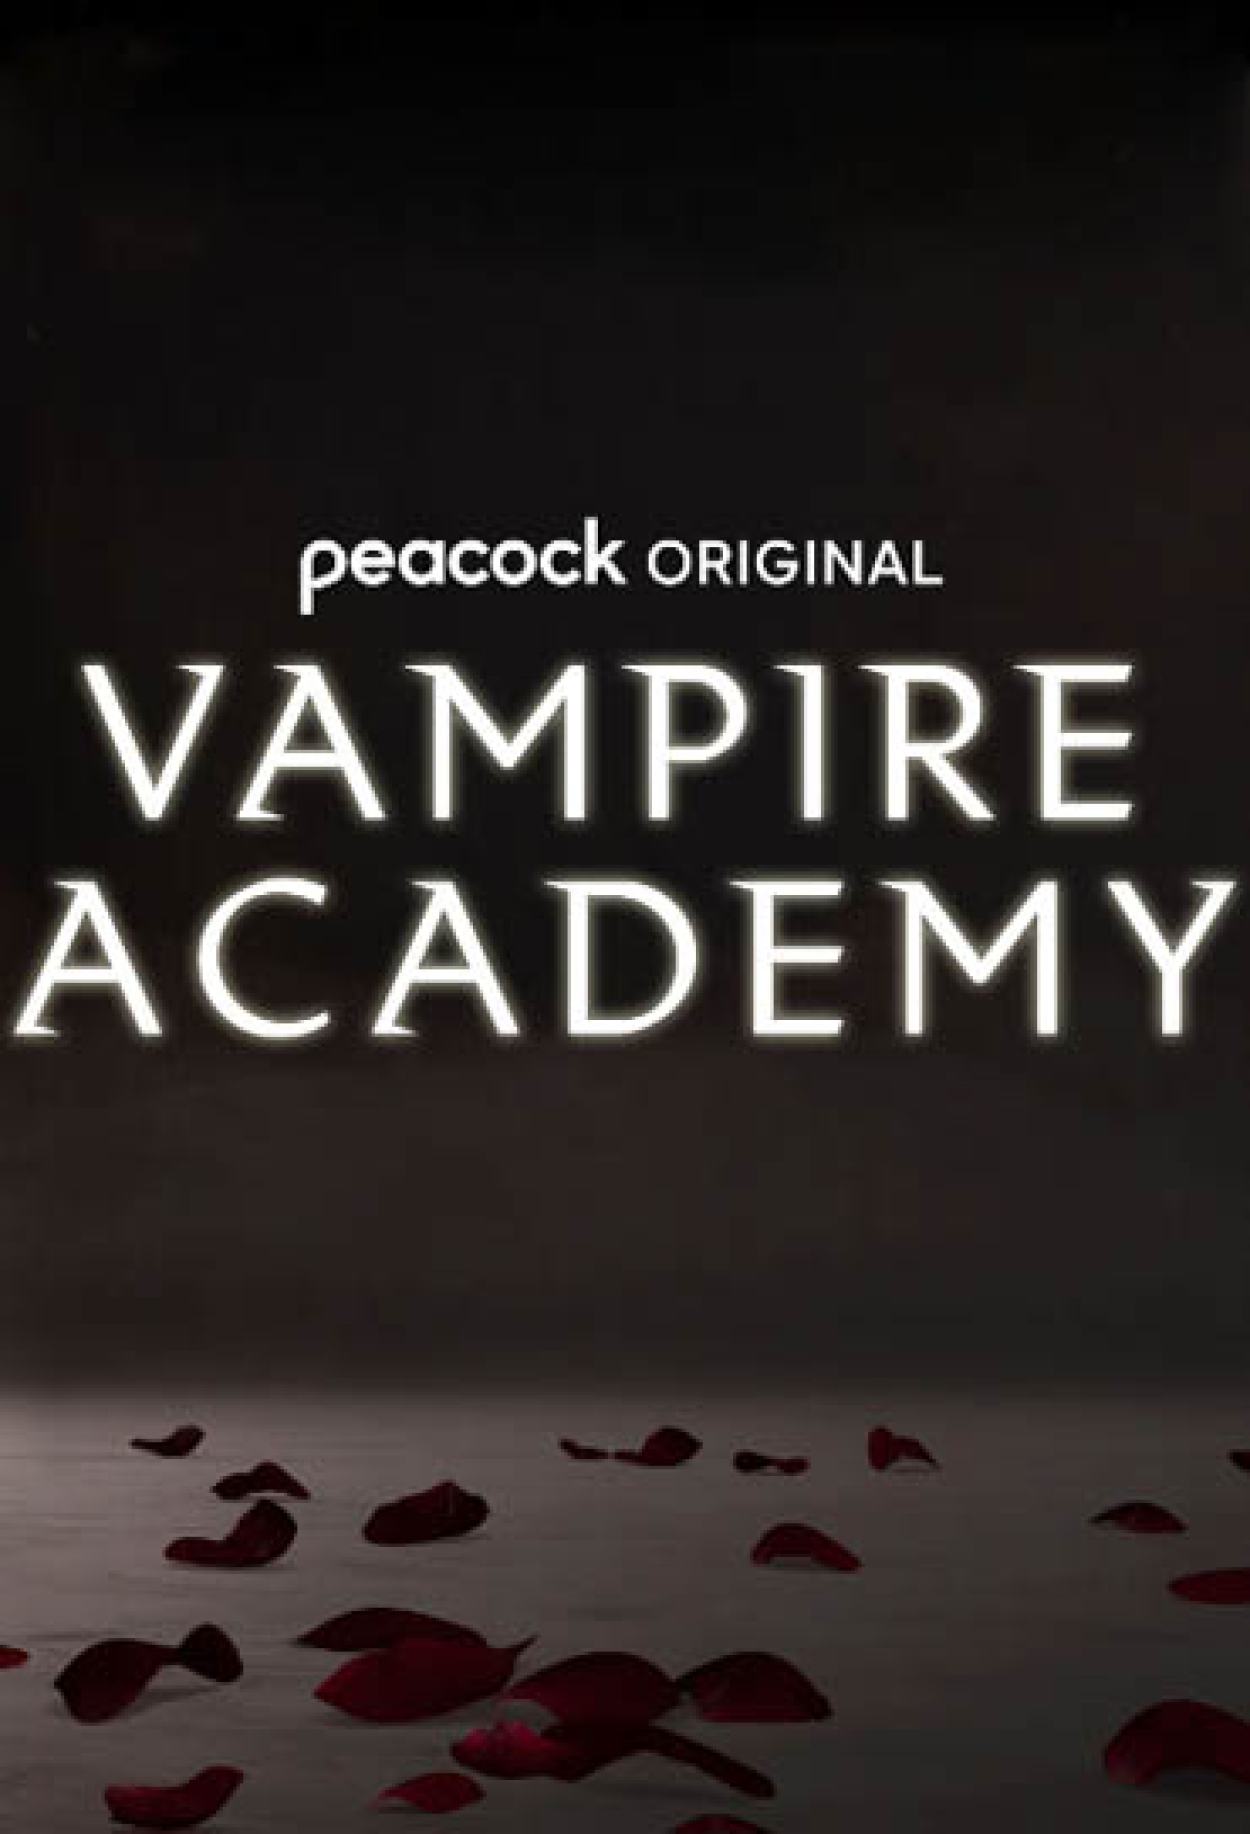 Apocalipse V - Netflix divulga trailer de nova série de vampiros com